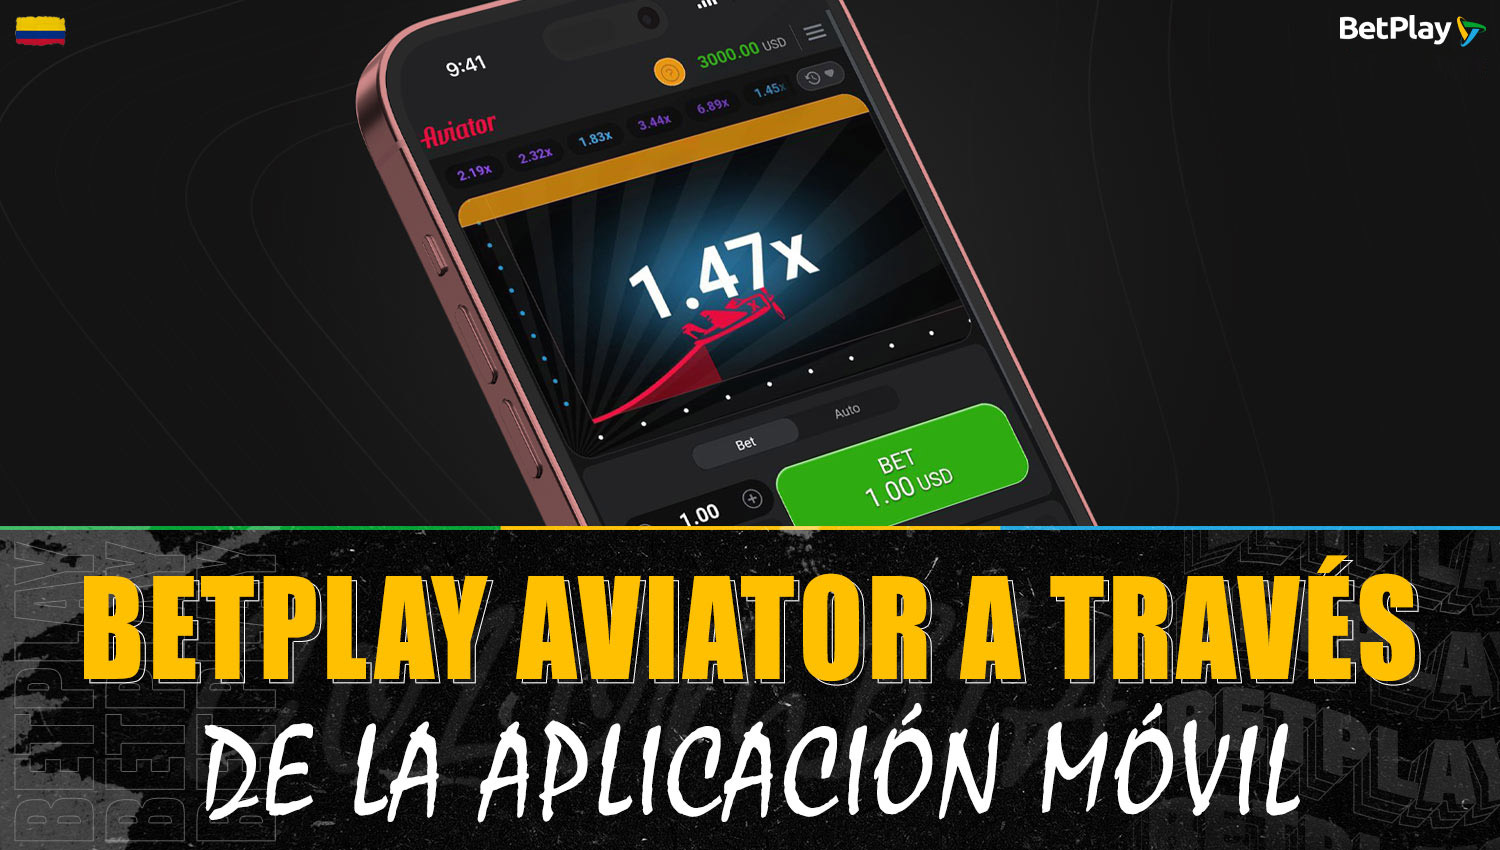 Se puede jugar a Aviator a través de la aplicación móvil de Betplay